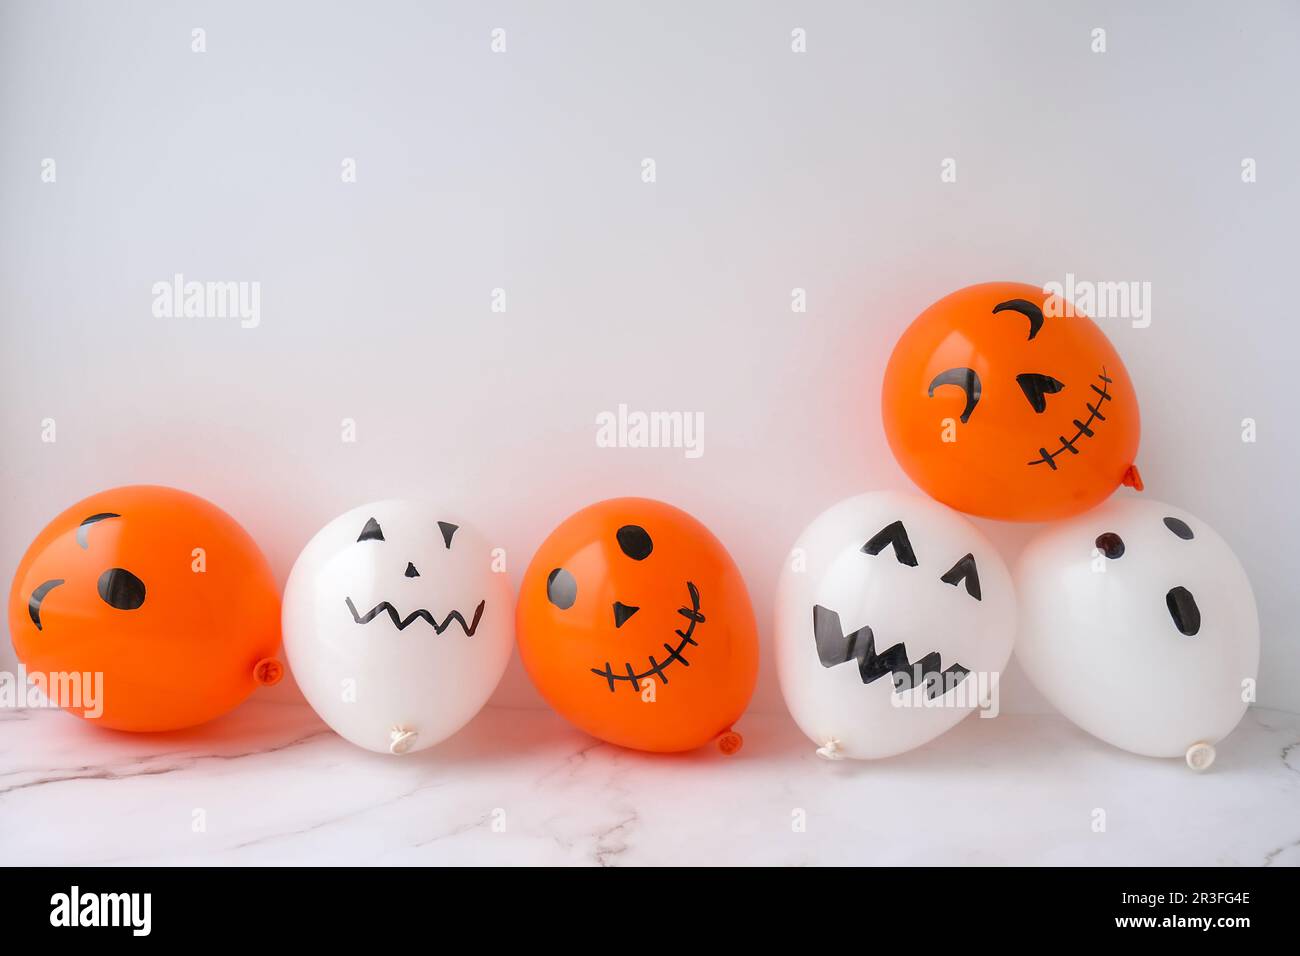 Bemalte Buben auf Ballons. Orangefarbene und weiße Bälle bereiten sie sich selbst für die halloween-Party vor. Halloween-Aktivitäten. Handgefertigt Stockfoto